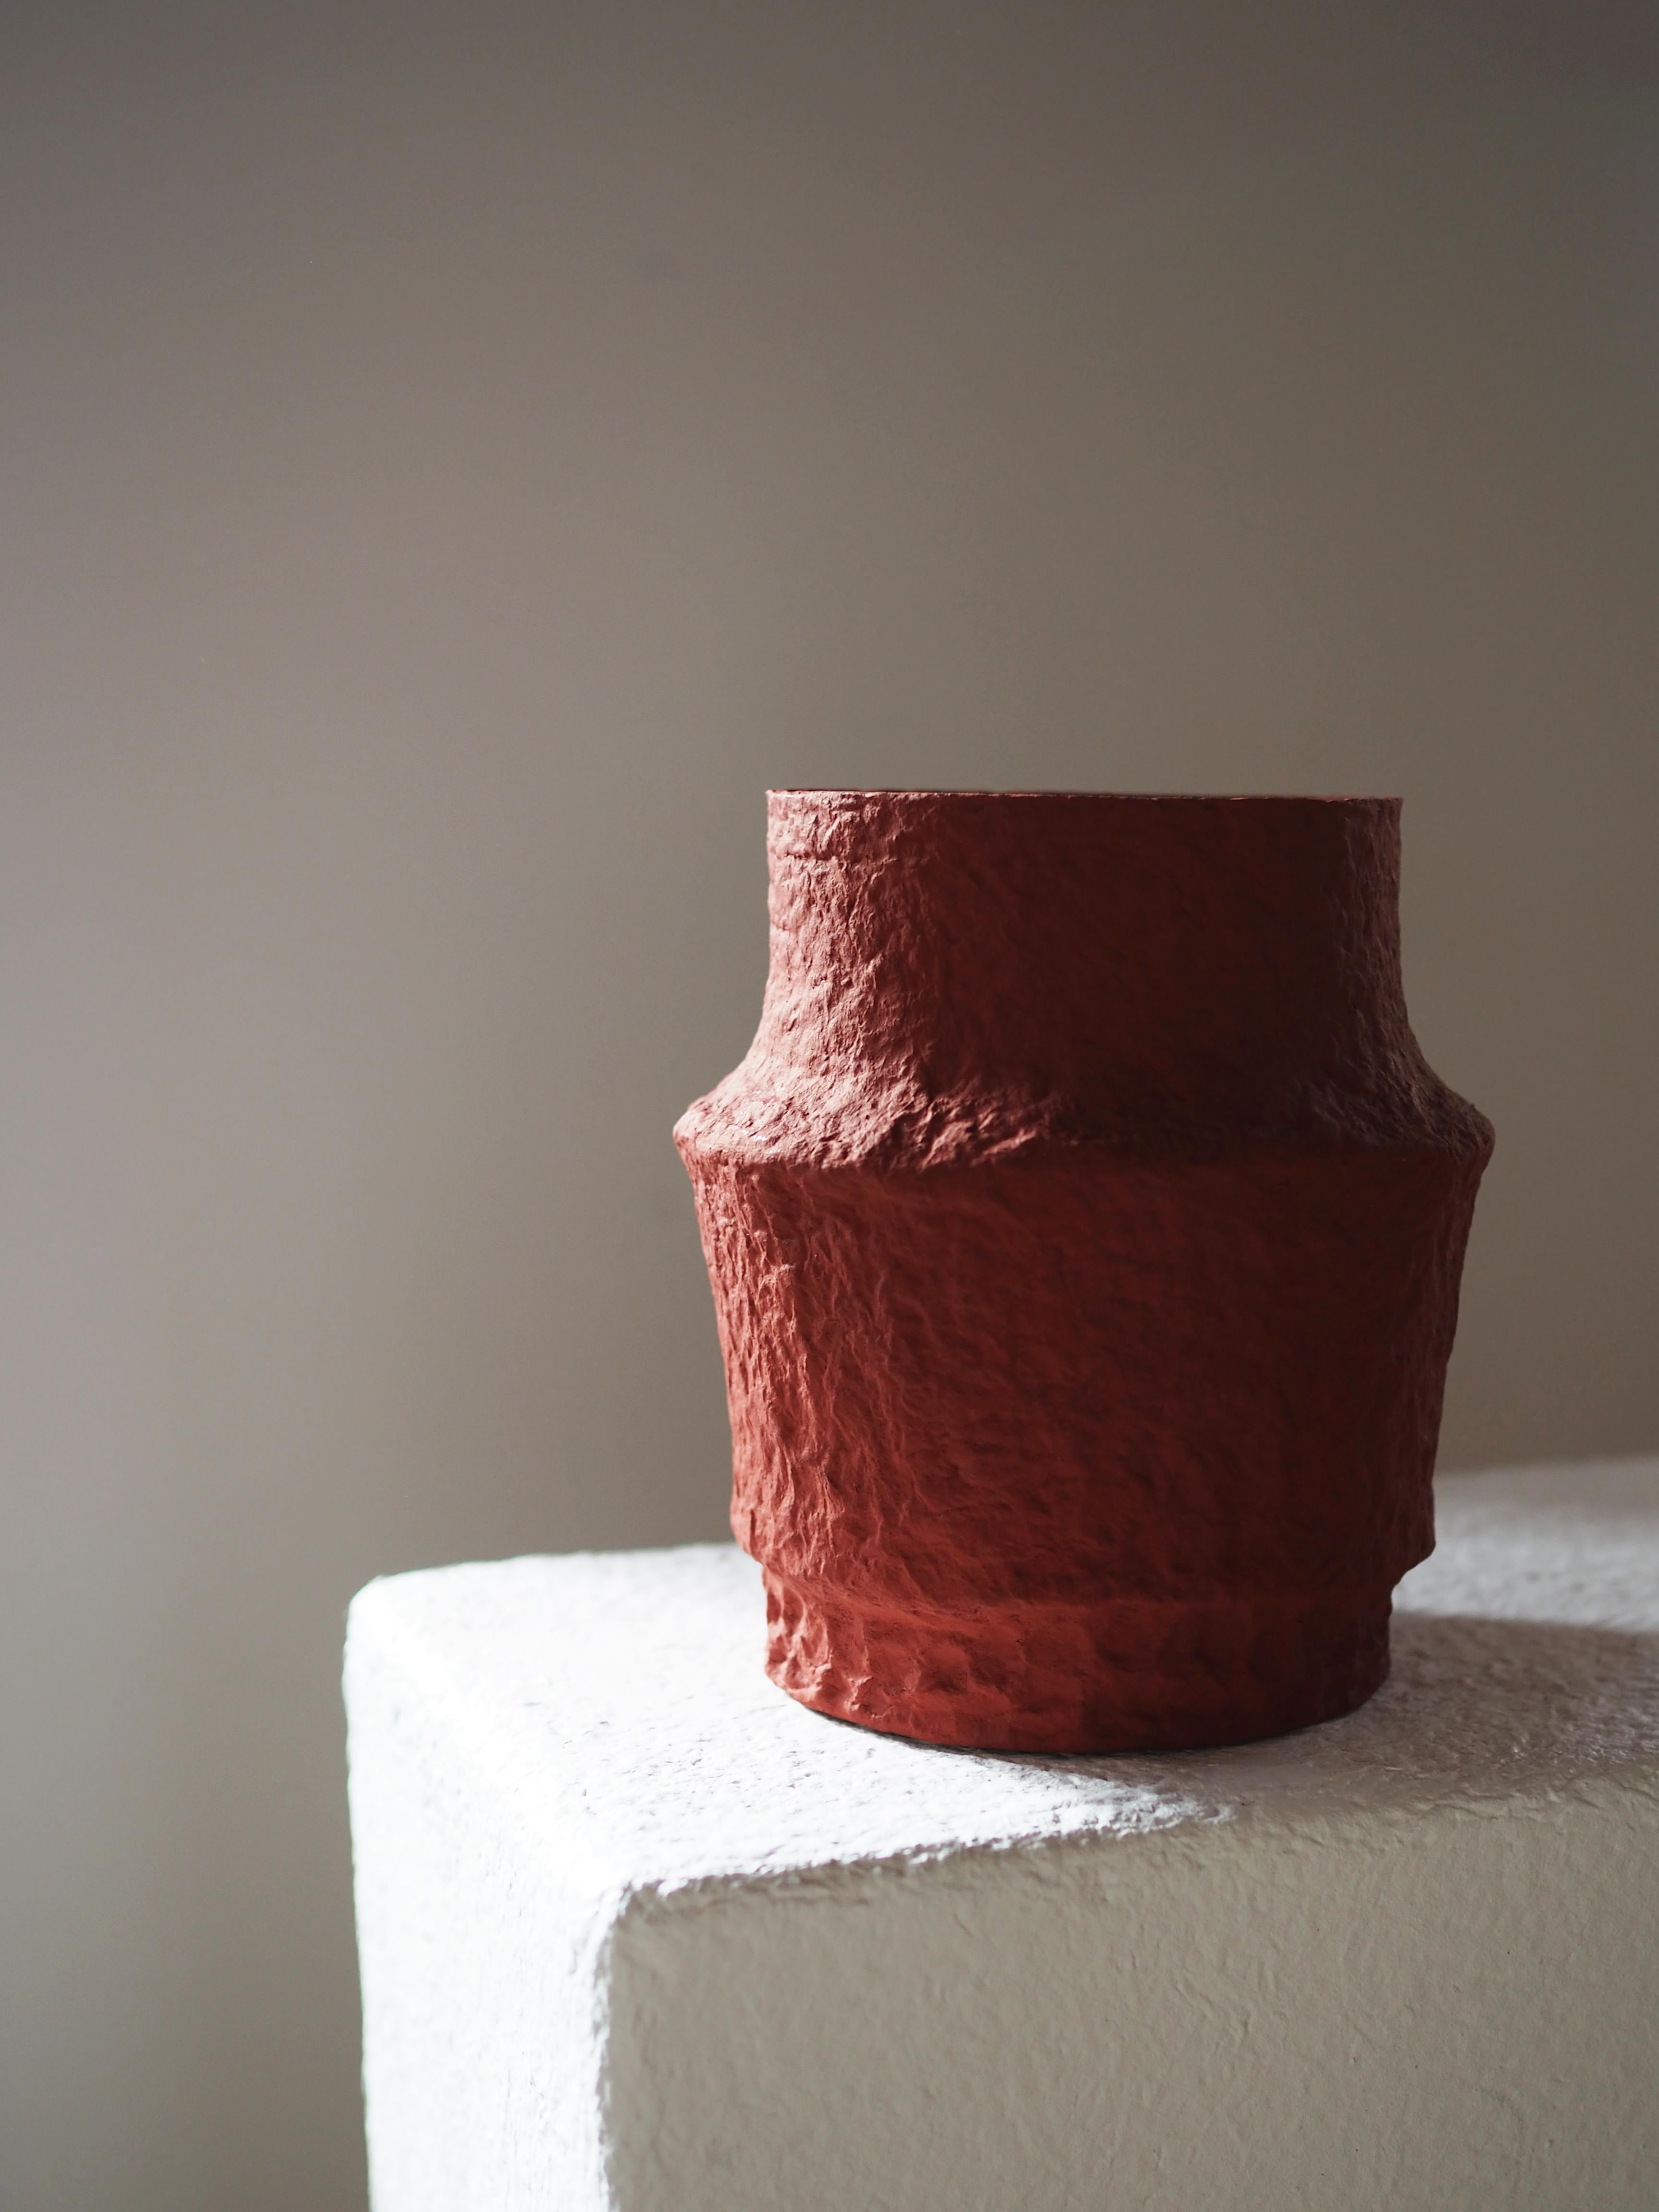 Lykos-Vase 3 von Pauline Pietri
Einzigartiges Stück.
Abmessungen: Ø 16 x H 15 cm. 
MATERIALIEN: Papierzellstoff und ultramarinblaue Farbe auf Biobasis.

Ökologisch gestaltete Vase auf der Grundlage von Zellstoff - Pappe, Papier, Zeitungen usw. Die